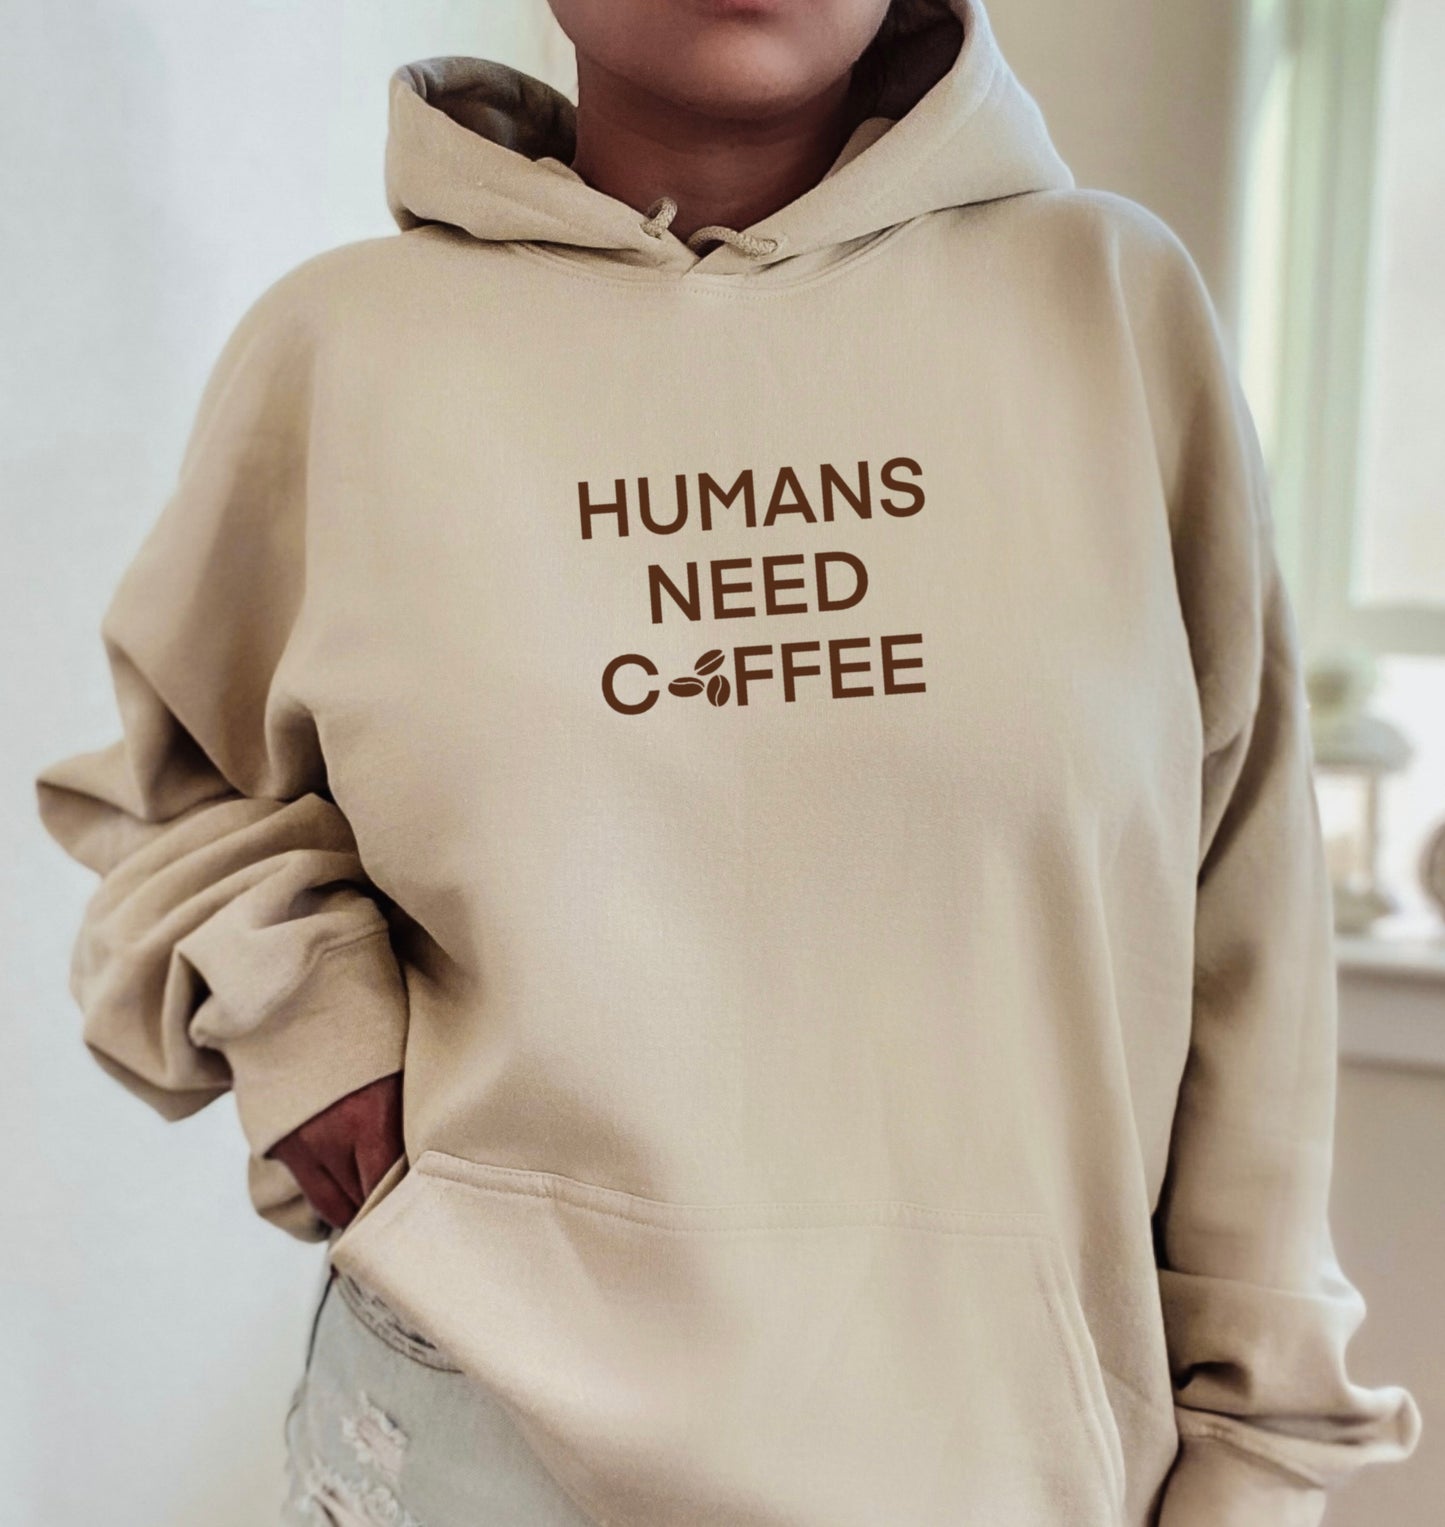 Humans need coffee